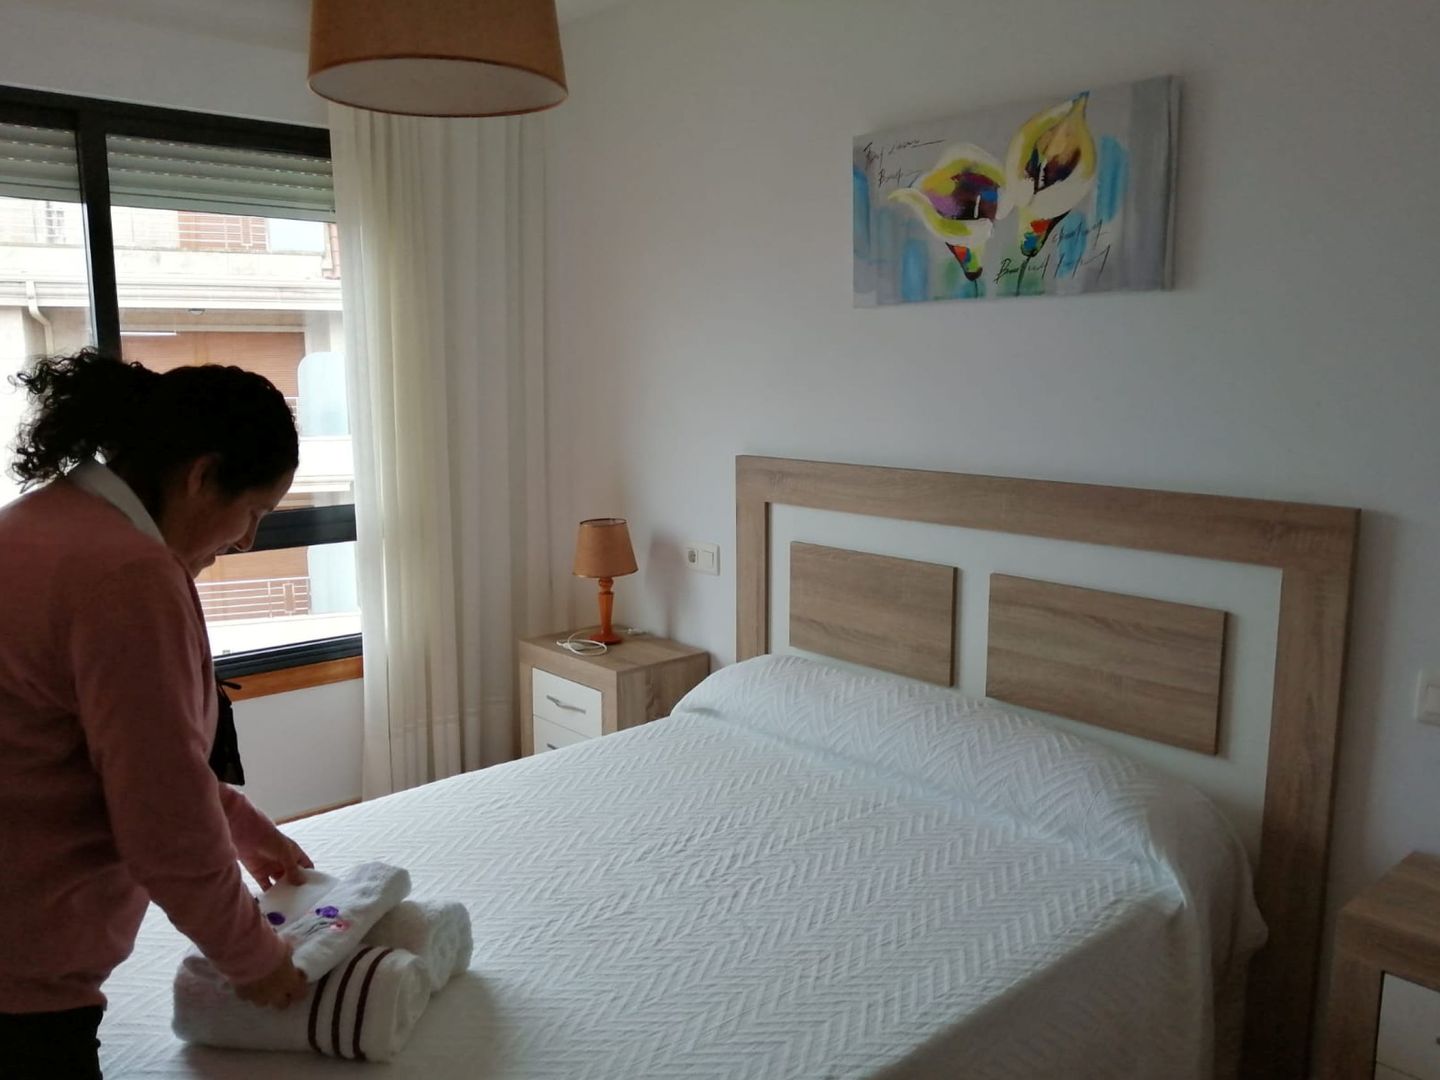 La empleada de un apartamento turístico en Sanxenxo prepara una estancia. (Reuters)